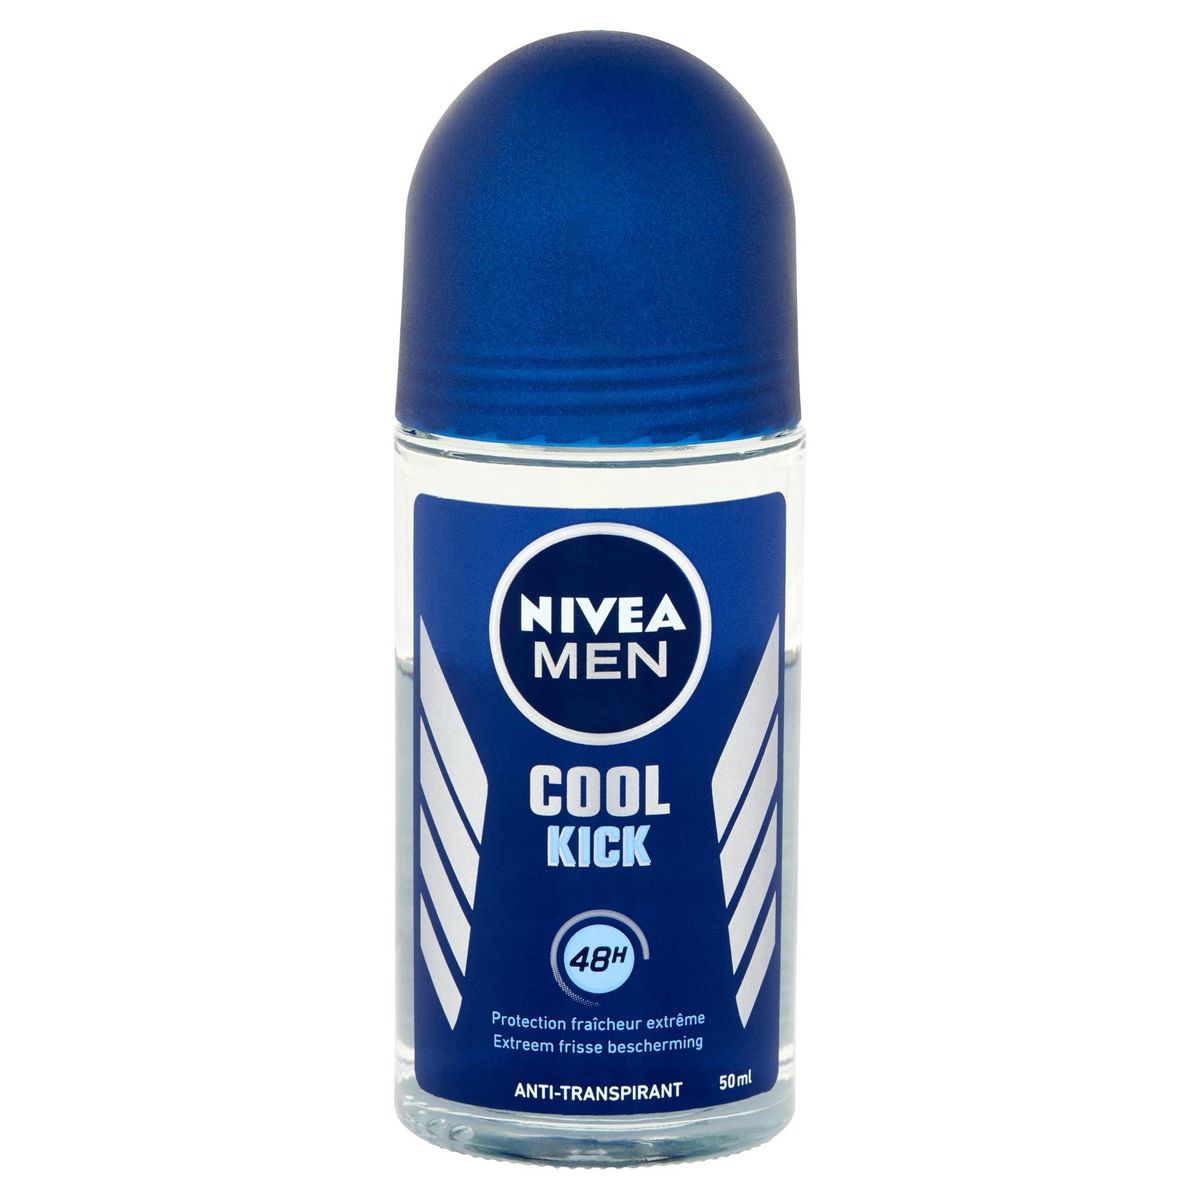 Nivea Men Cool Kick 48H Anti-Transpirant 50 ml